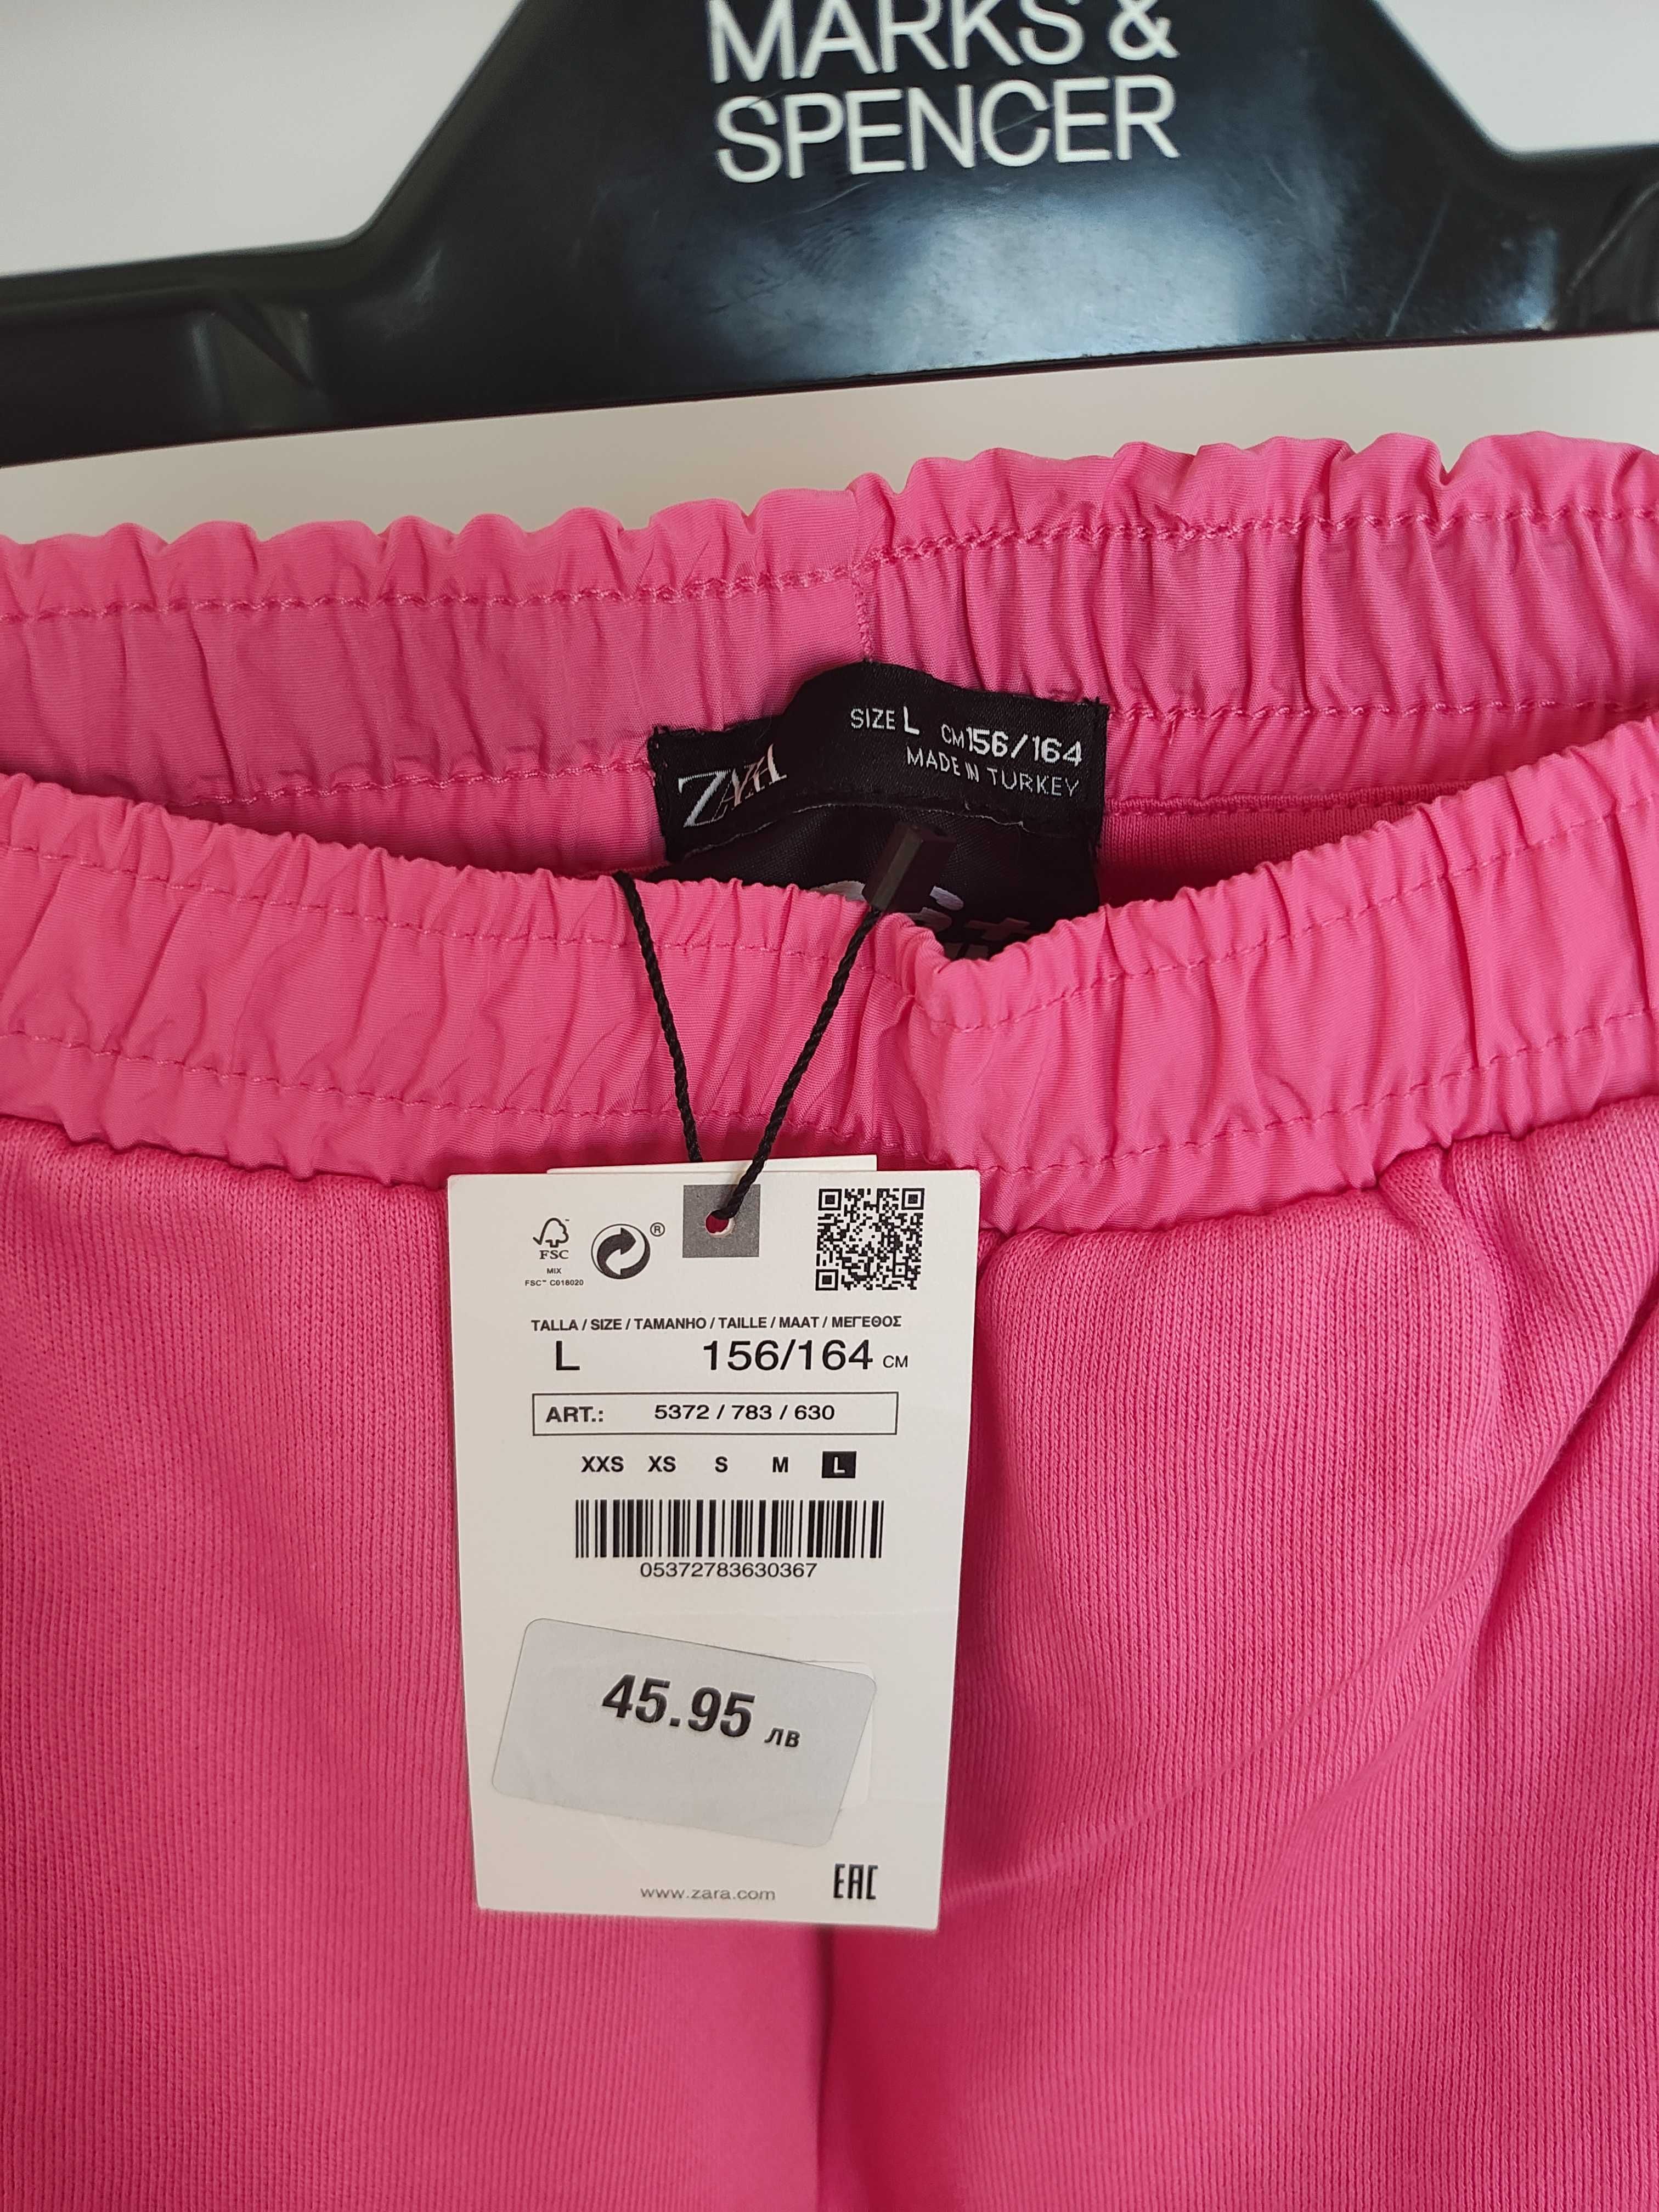 Нови с етикет детски панталони Zara, 156 cm - 164 cm